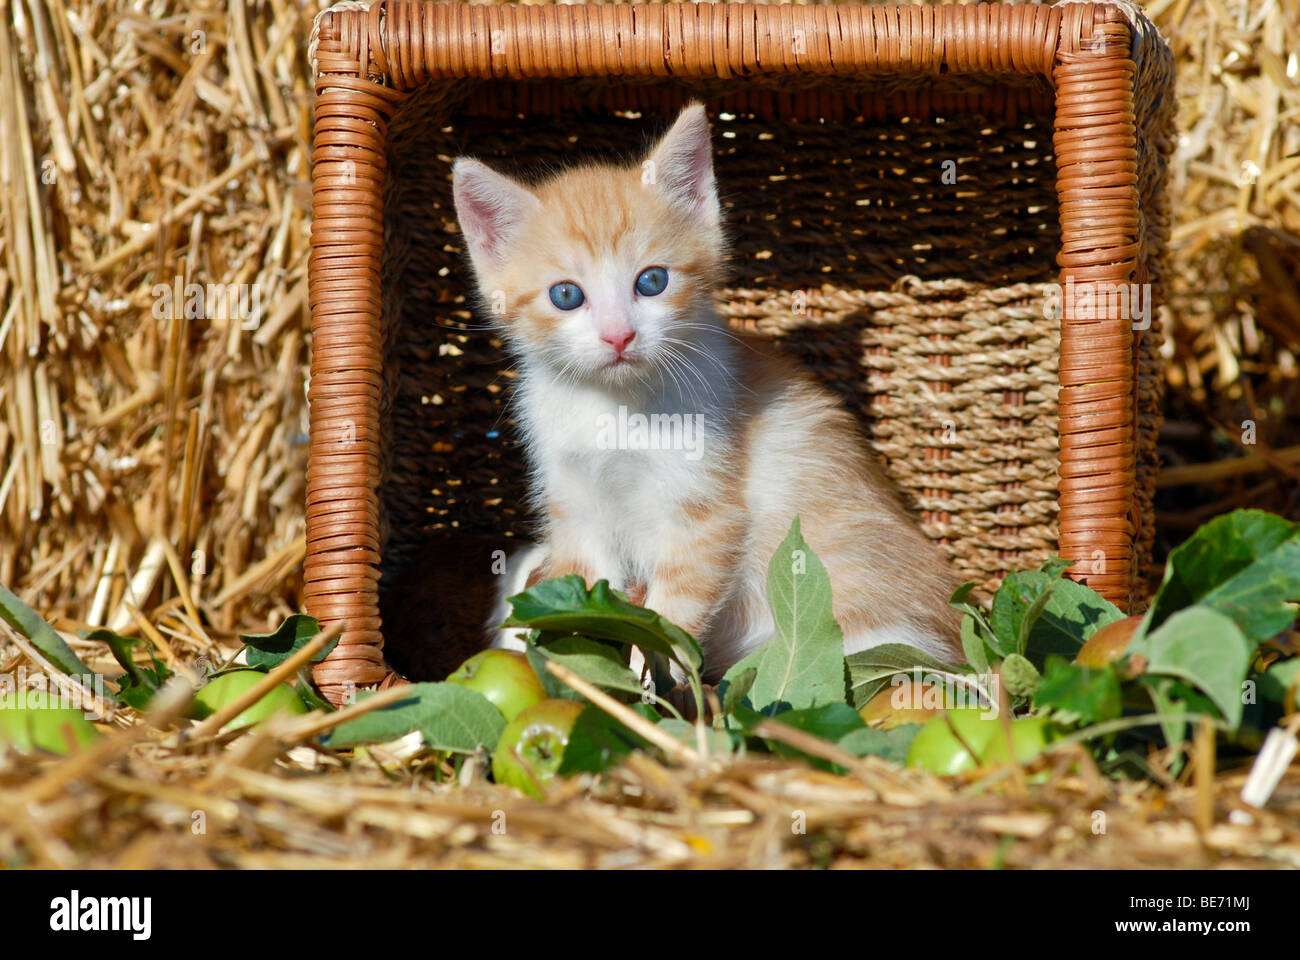 Hauskatze, Kätzchen in einem umgestürzten Weidenkorb vor Stroh Stockfoto